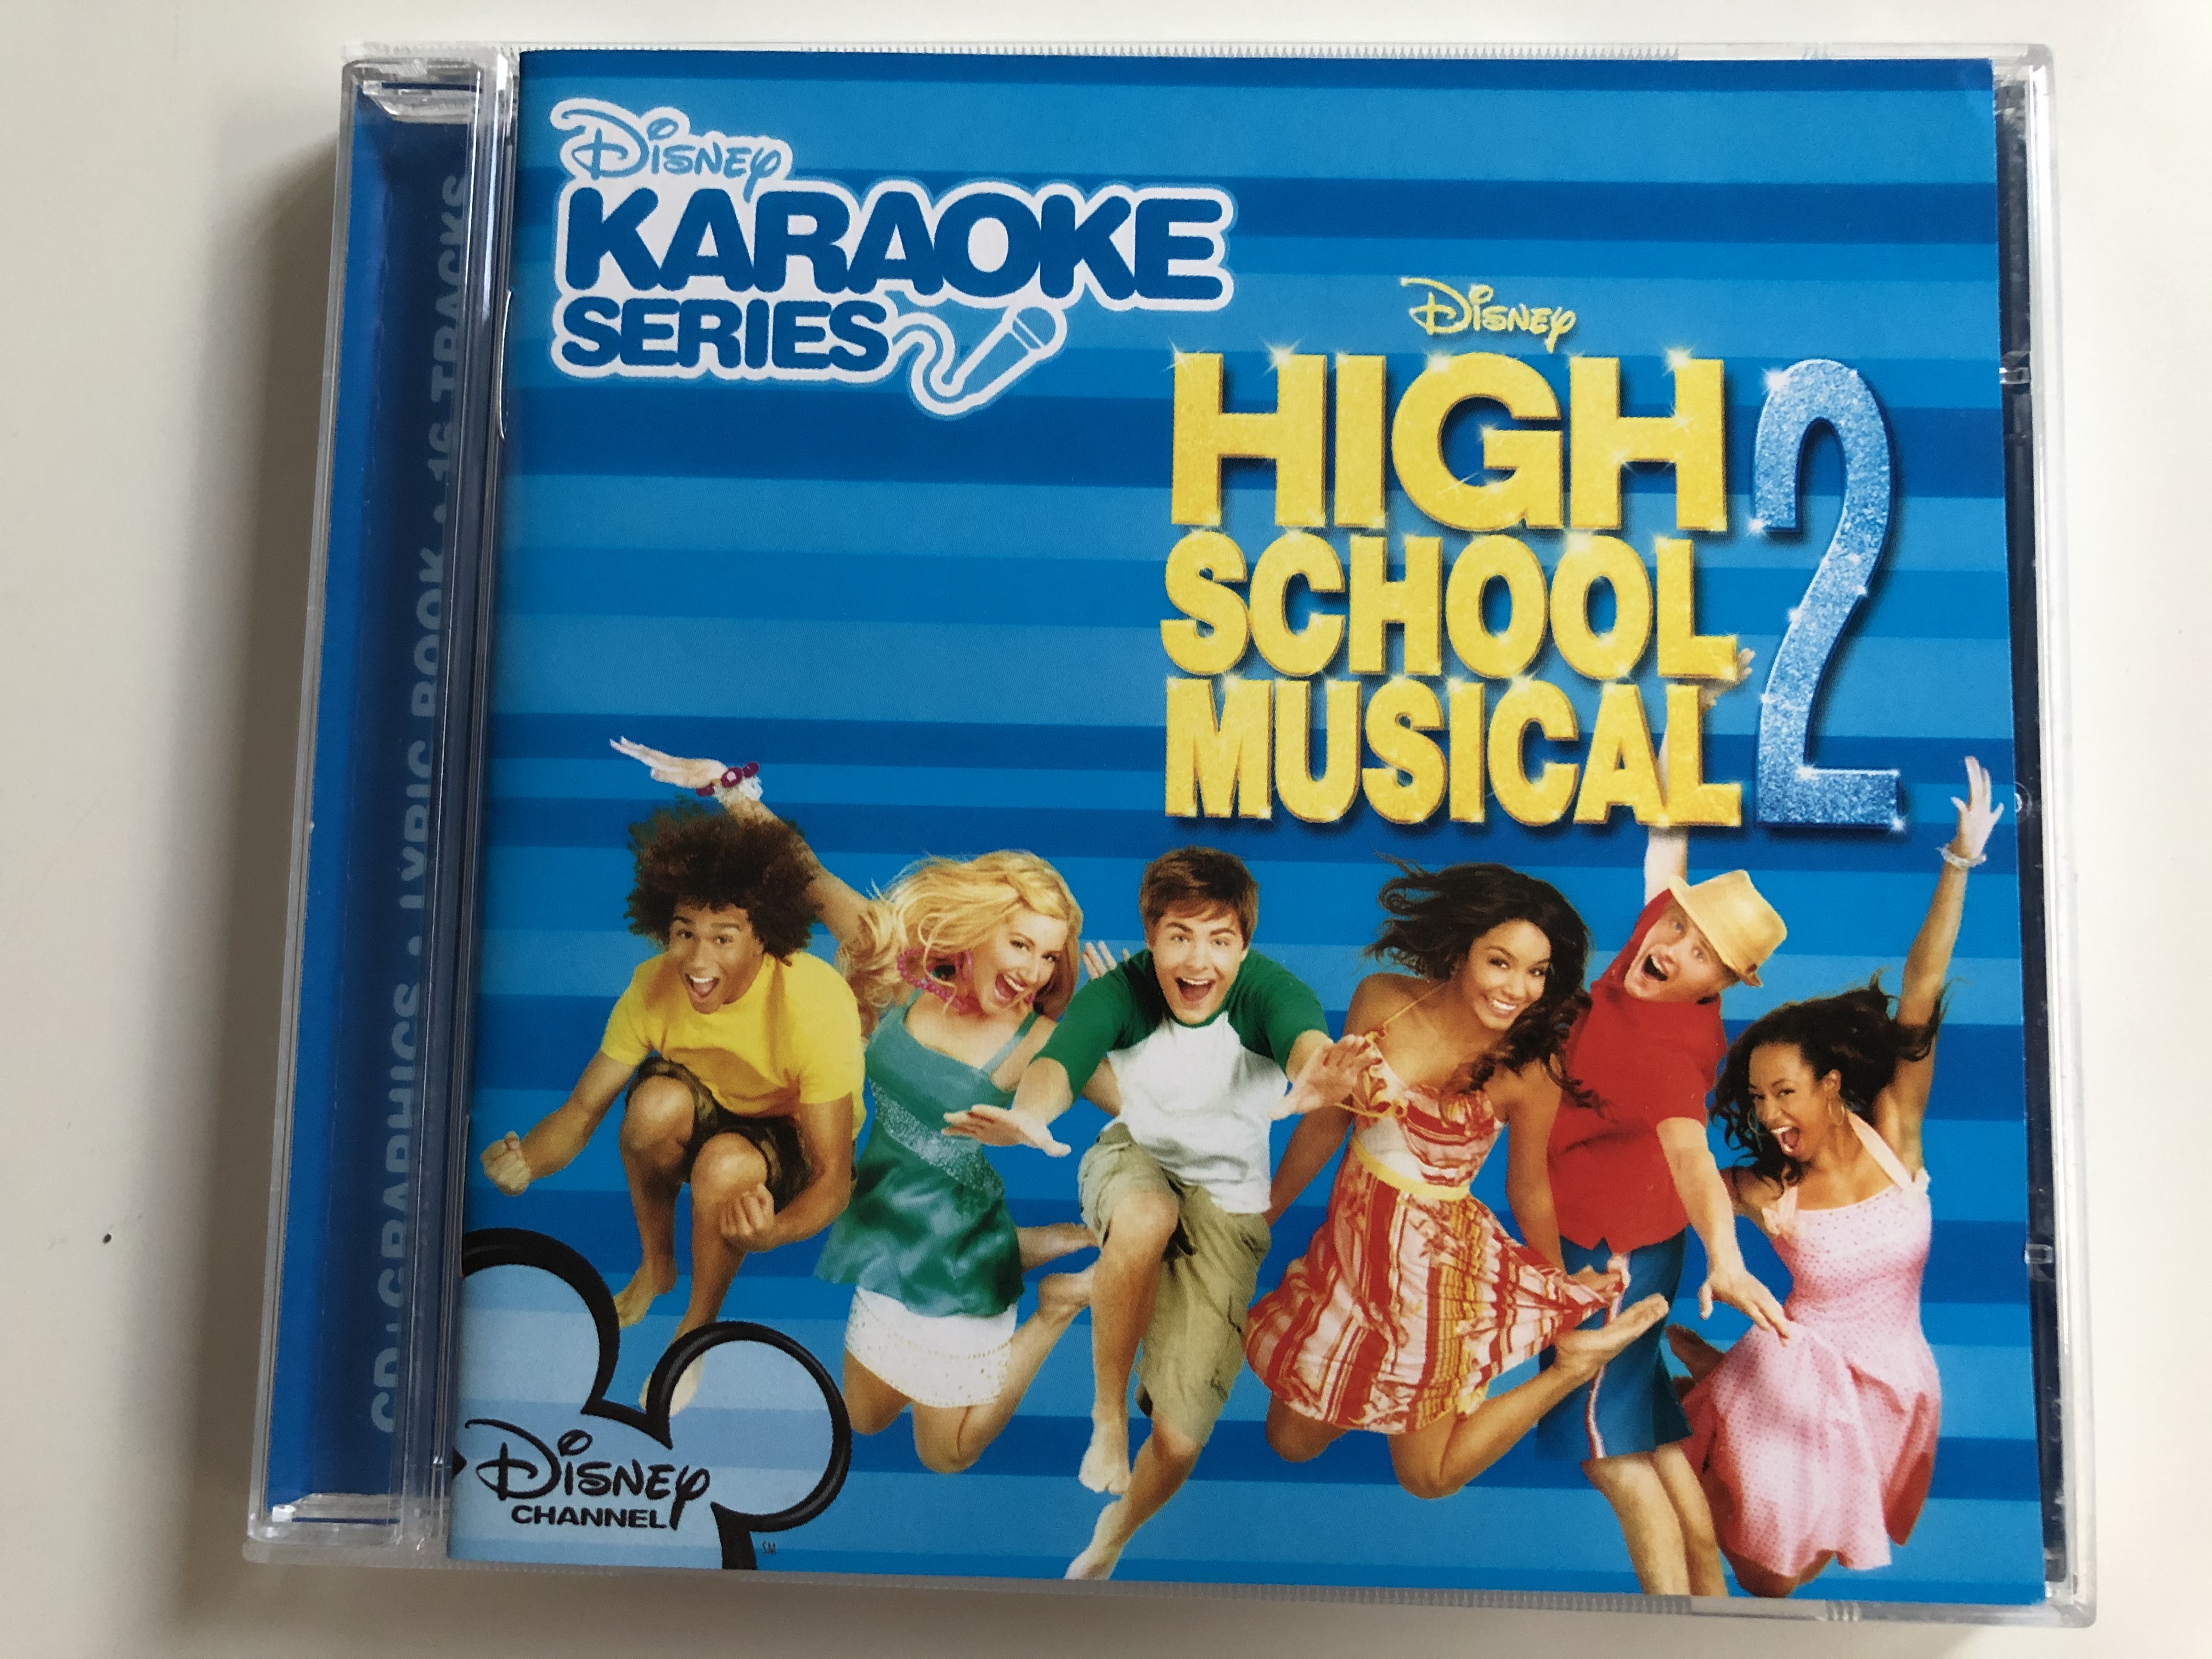 high-school-musical-2-disney-karaoke-series-walt-disney-records-audio-cd-2007-5099969336621-1-.jpg